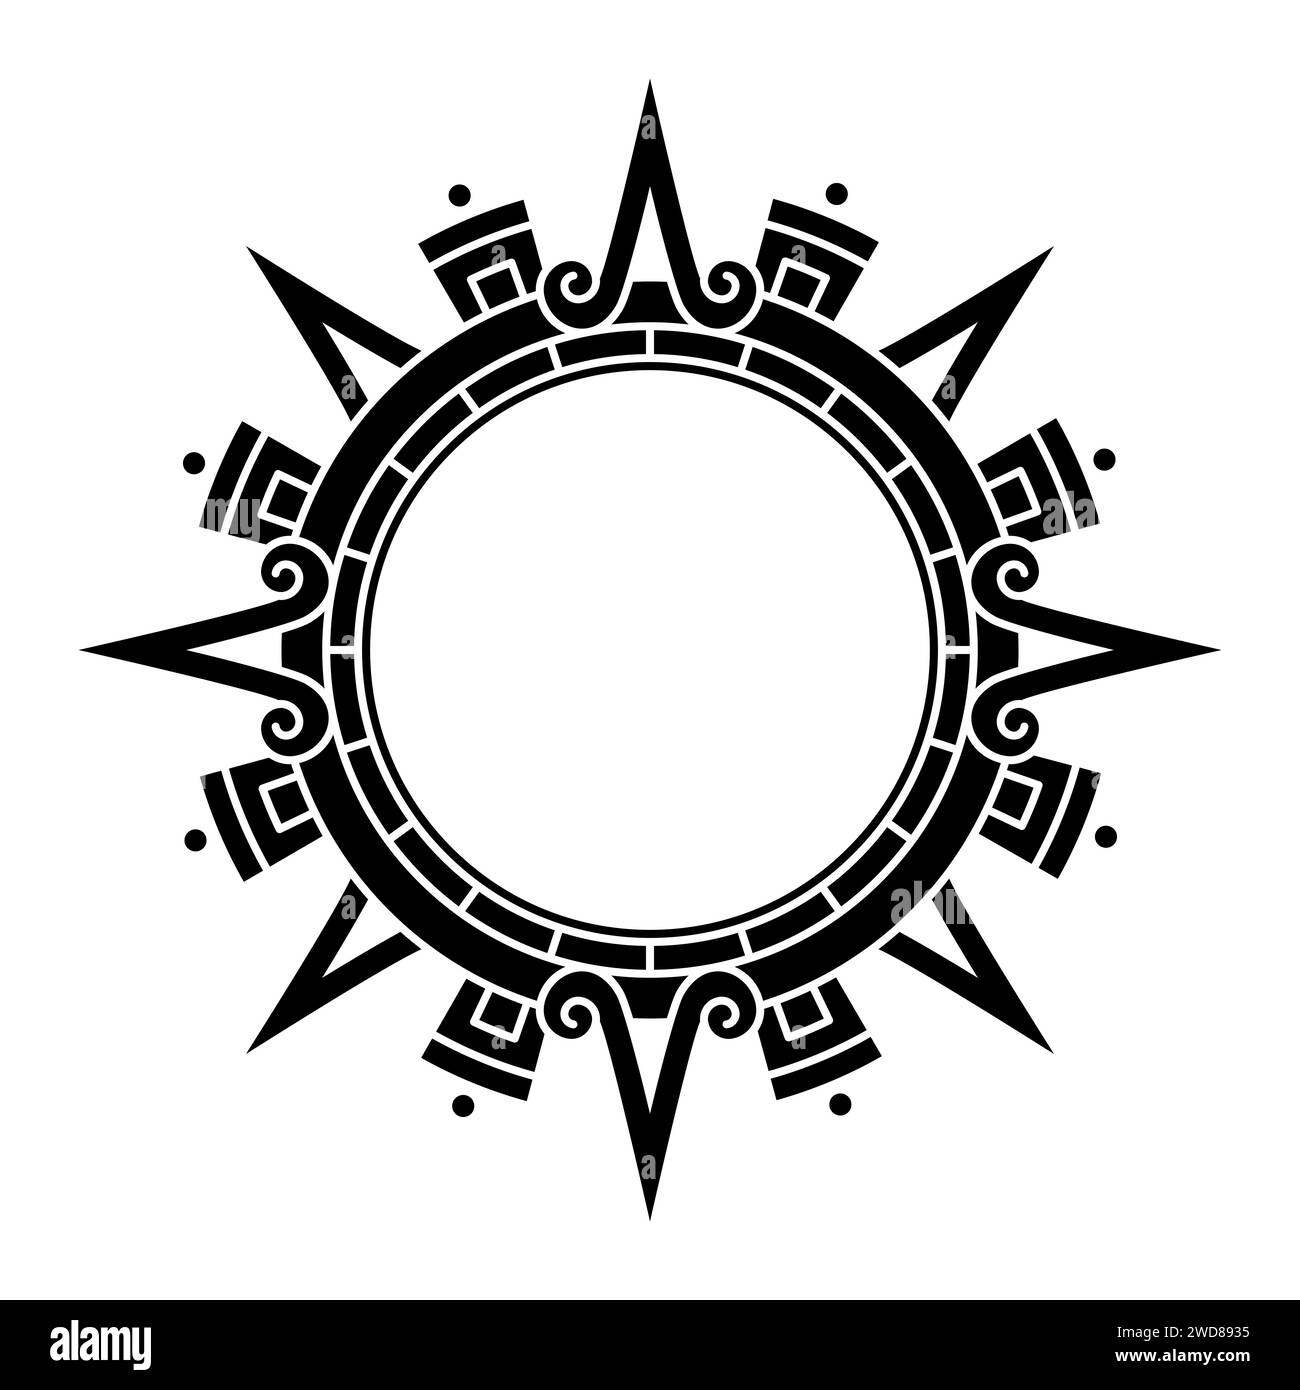 Disque solaire aztèque, symbole solaire et diadème, représentant la divinité solaire aztèque Tonatiuh. Flèches principales ou rayons du soleil pointant dans les directions cardinales. Banque D'Images